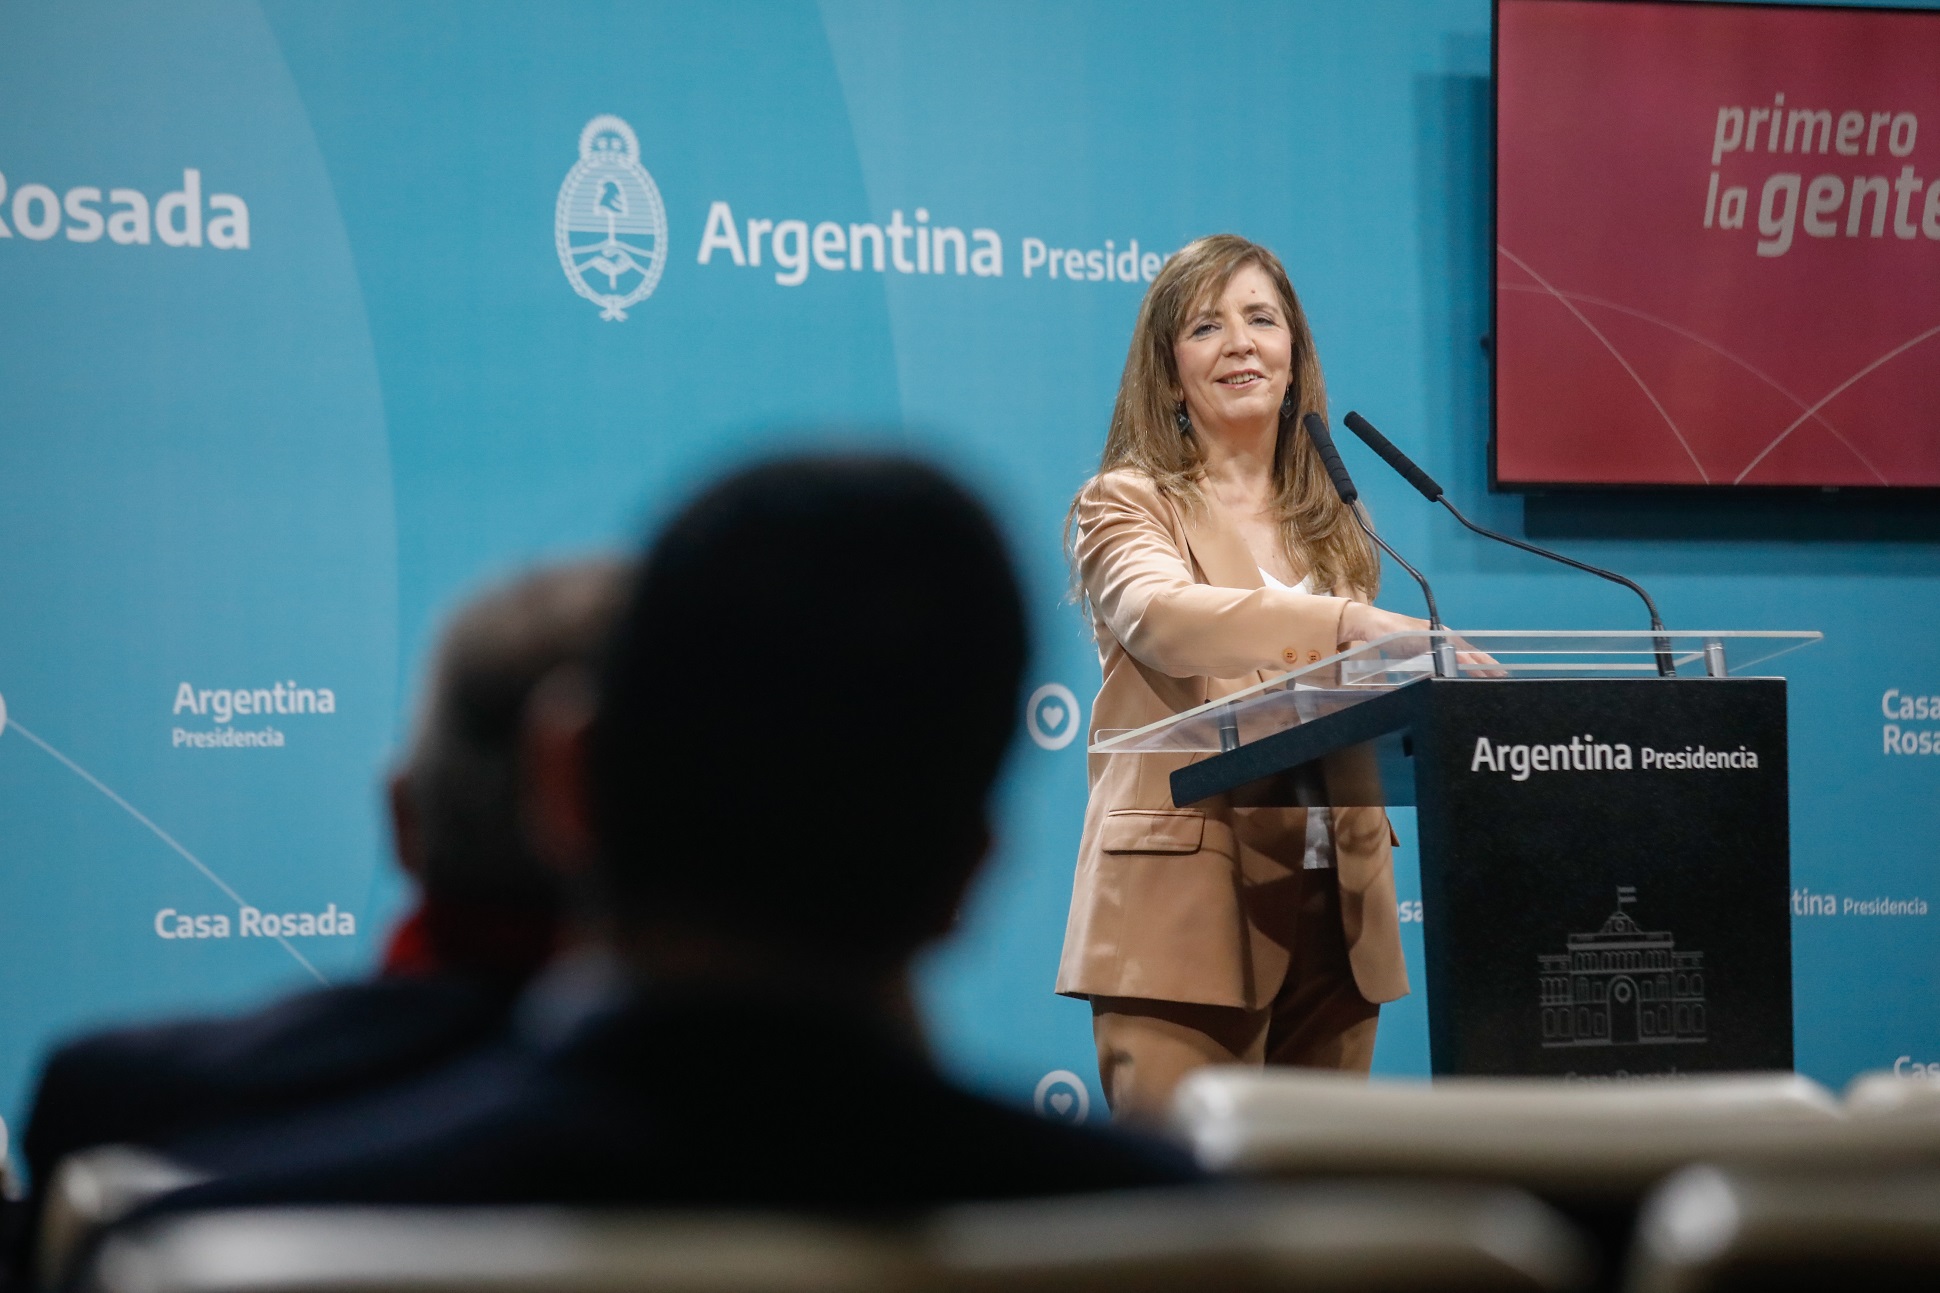 “La Argentina está creciendo y desarrollándose en el rumbo que todos y todas esperamos”, afirmó Cerruti